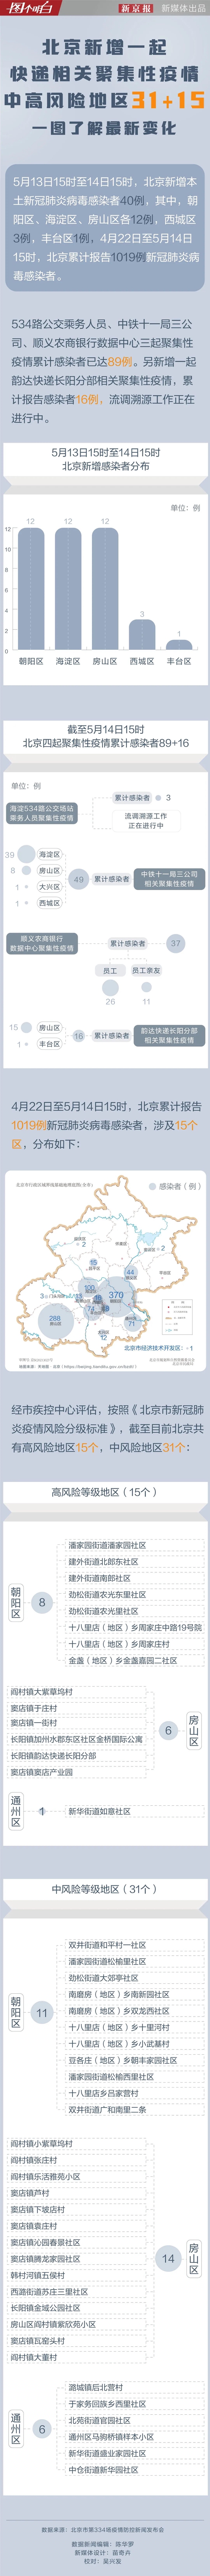 北京中高风险地区31+15，一图了解最新变化